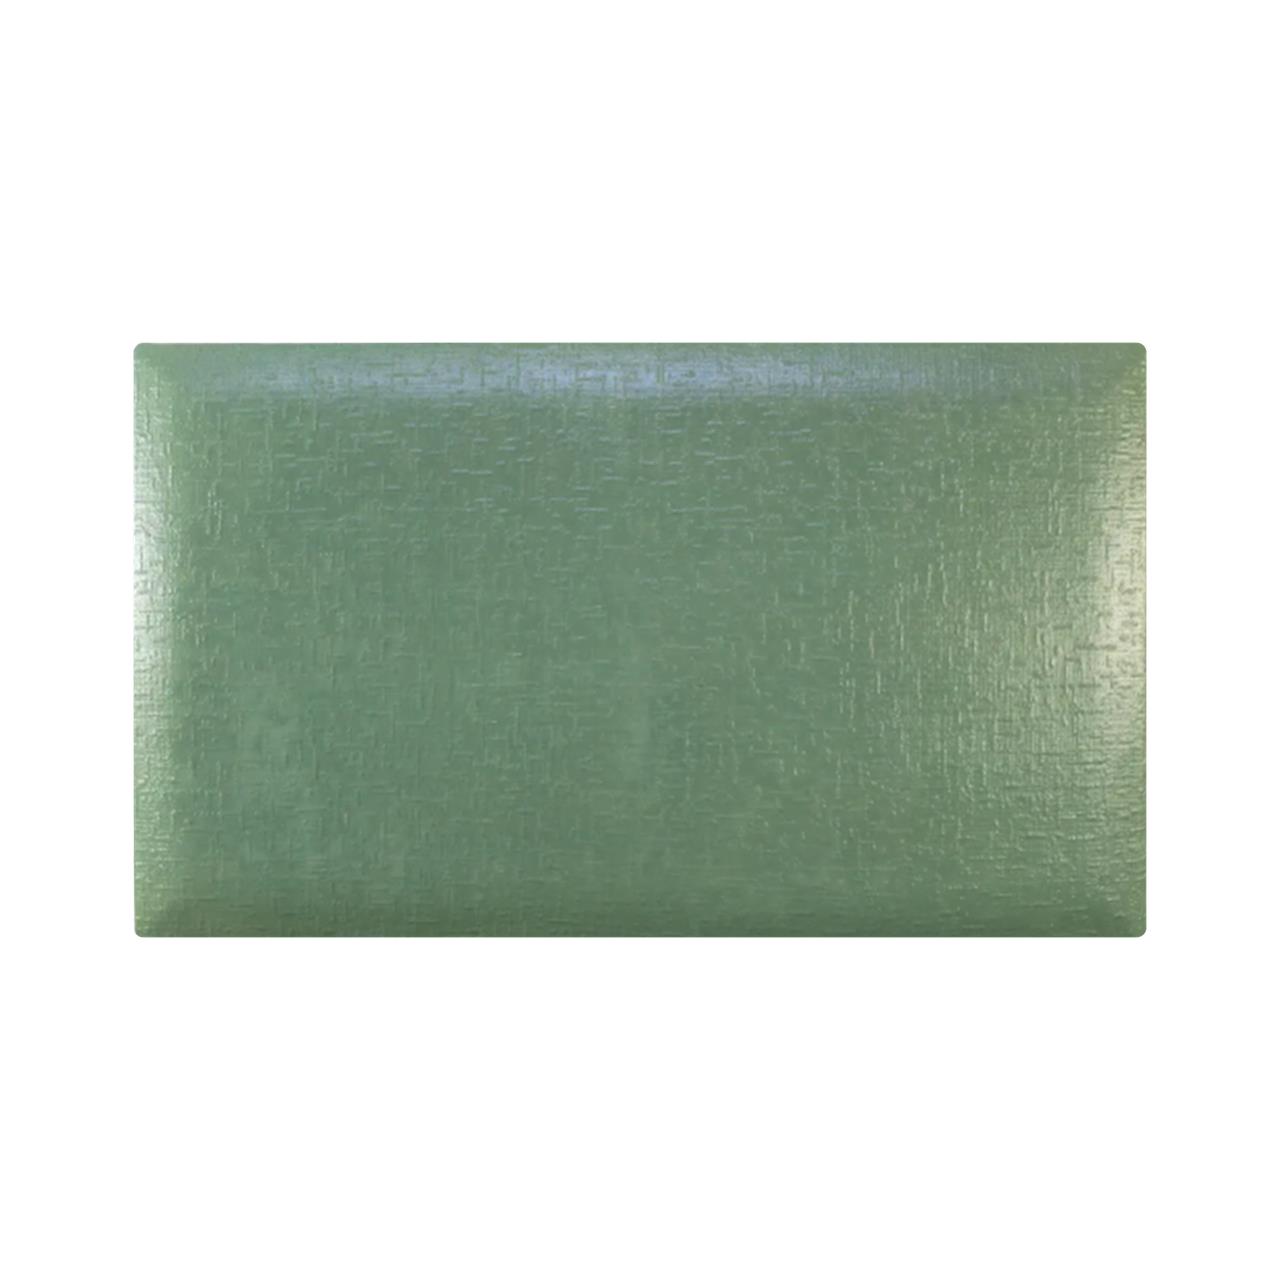 Потолочный керамический обогреватель Uden-S KEN-500 Холст жаккард оливковый (2266KM5GAho563)